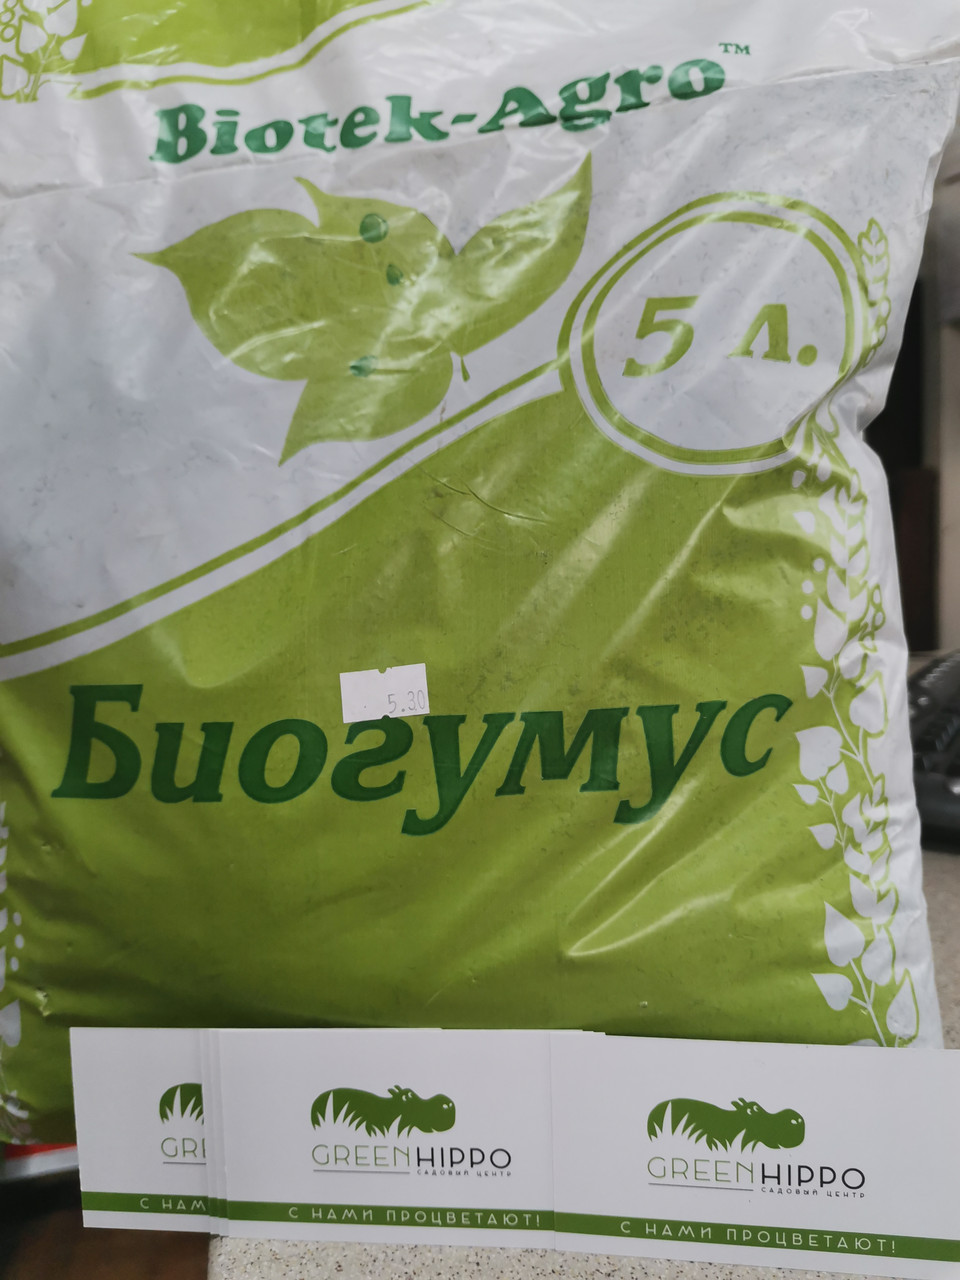 Биогумус, Biotek-Agro, 5 л.